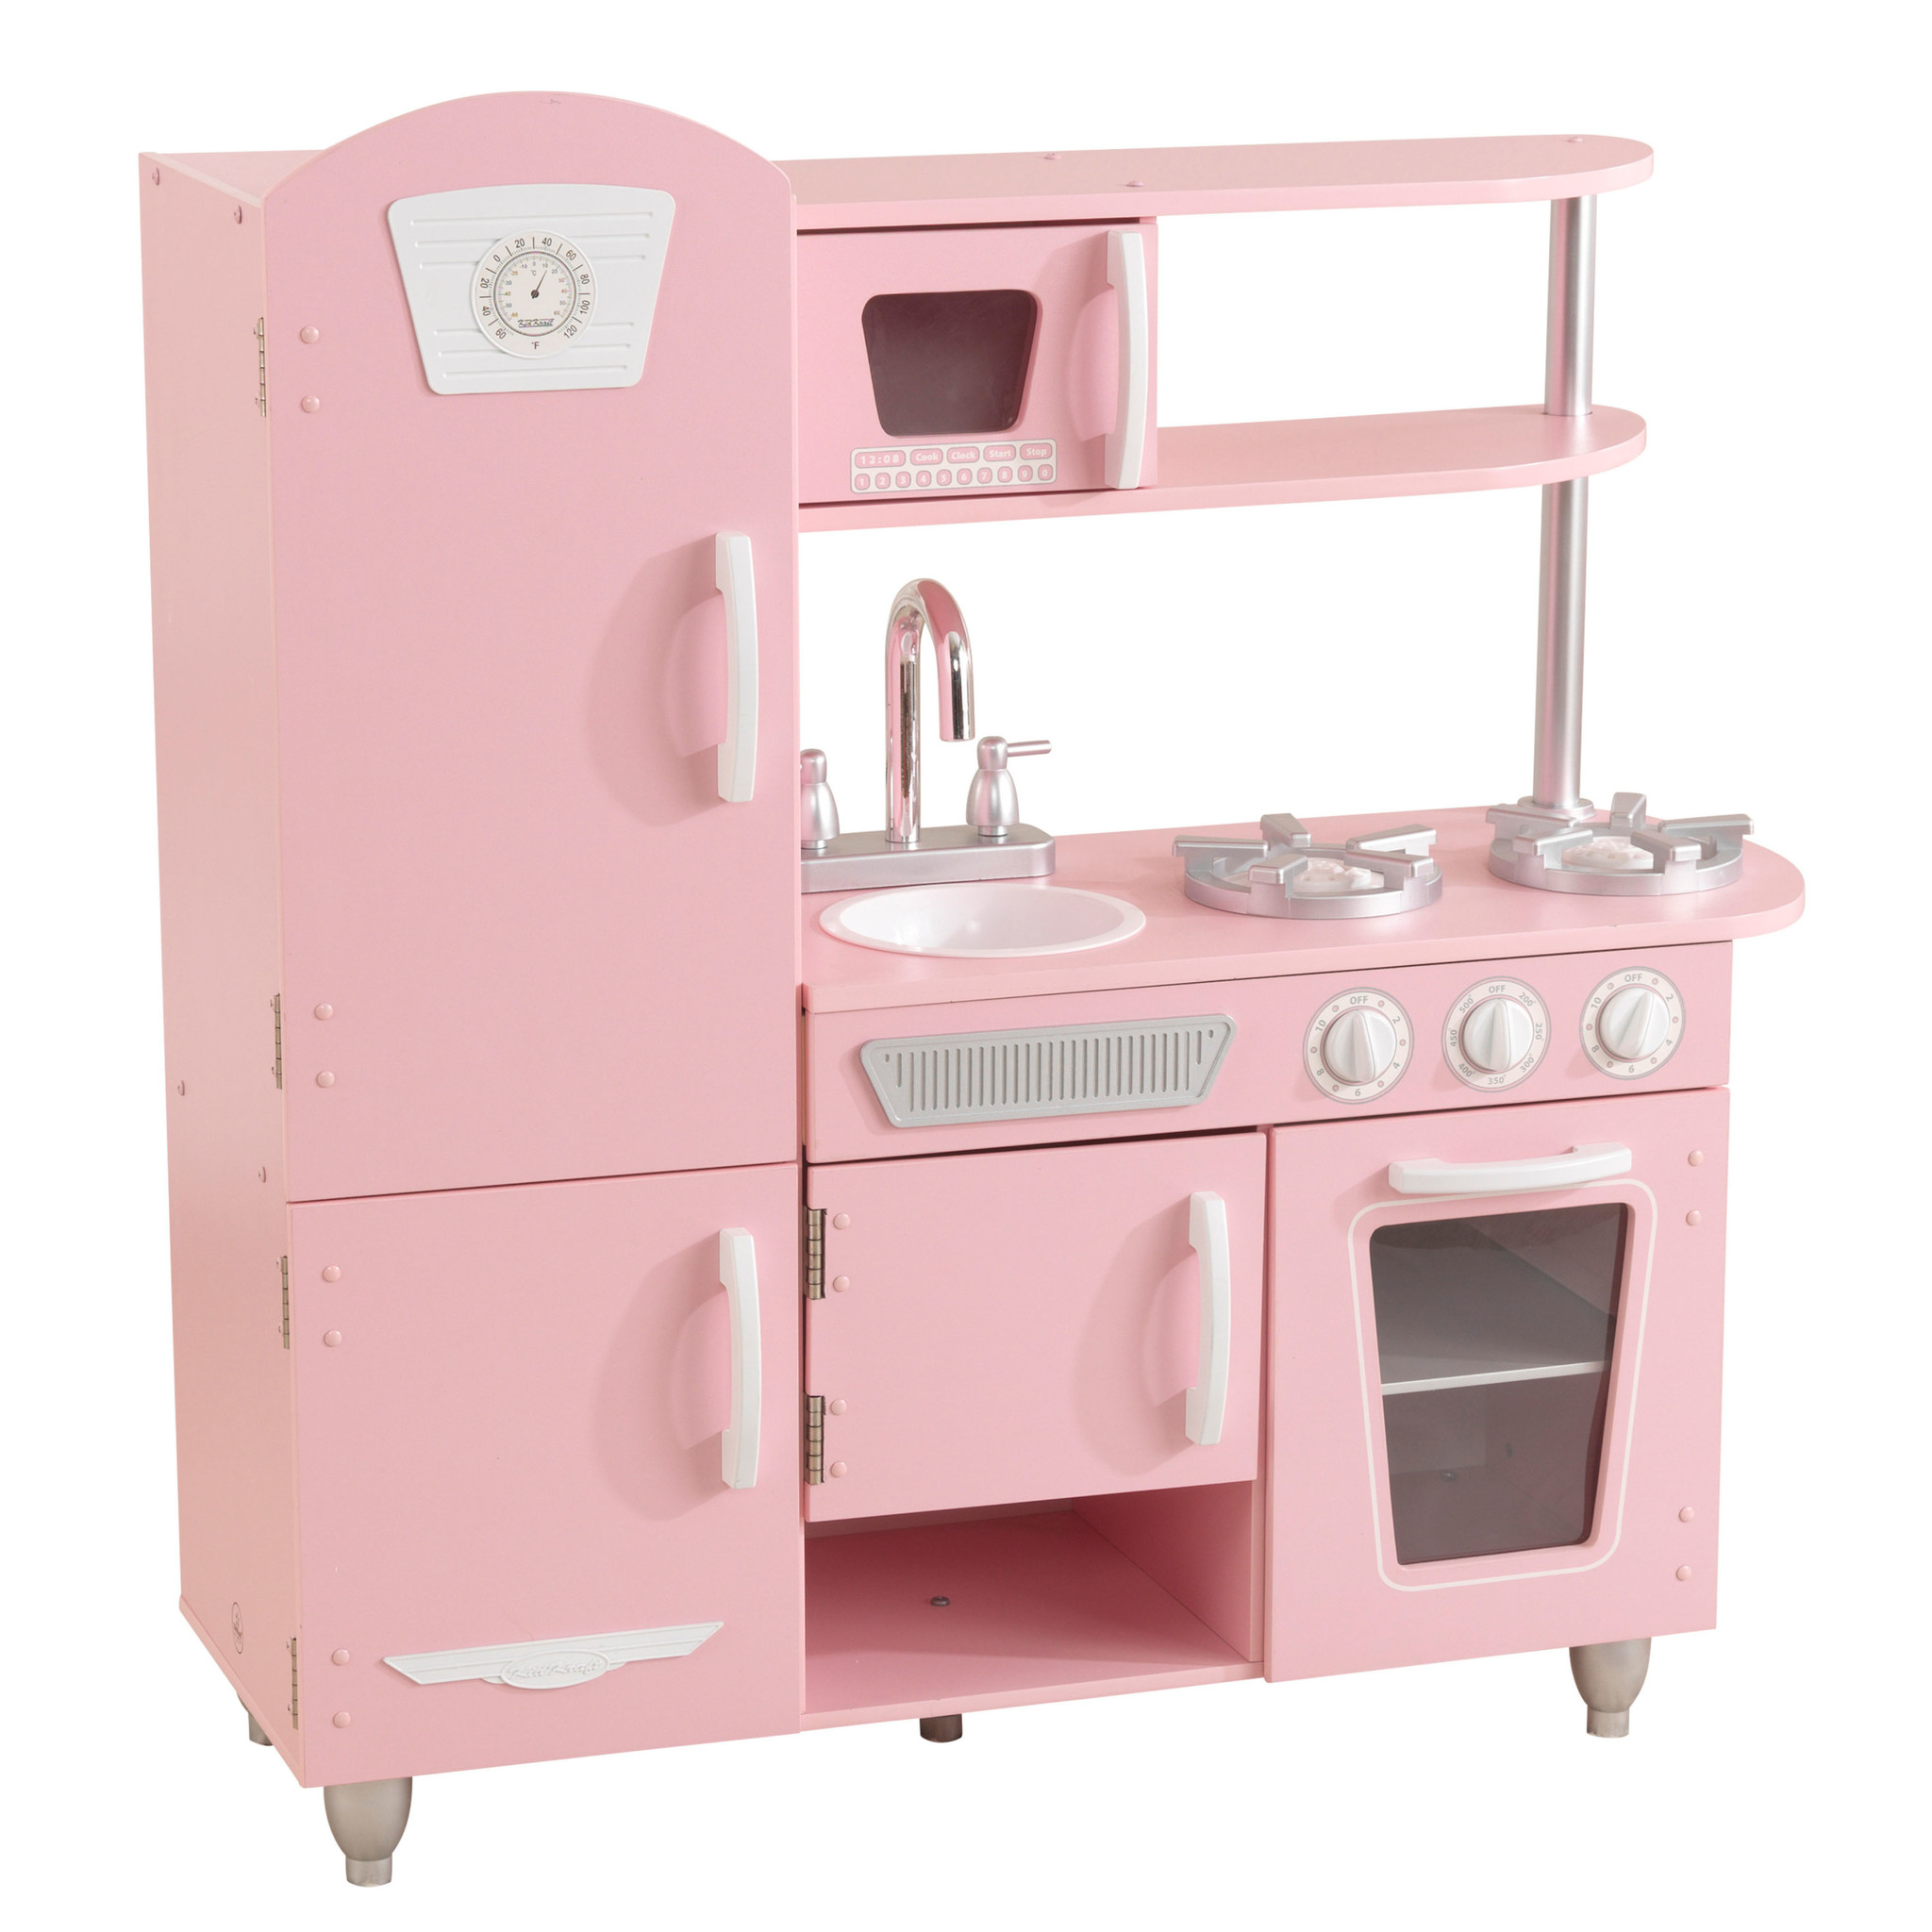 kathedraal Overgang vaardigheid Kinderkeuken Roze - Vintage retro keukentje voor kinderen - Kinderspel ®